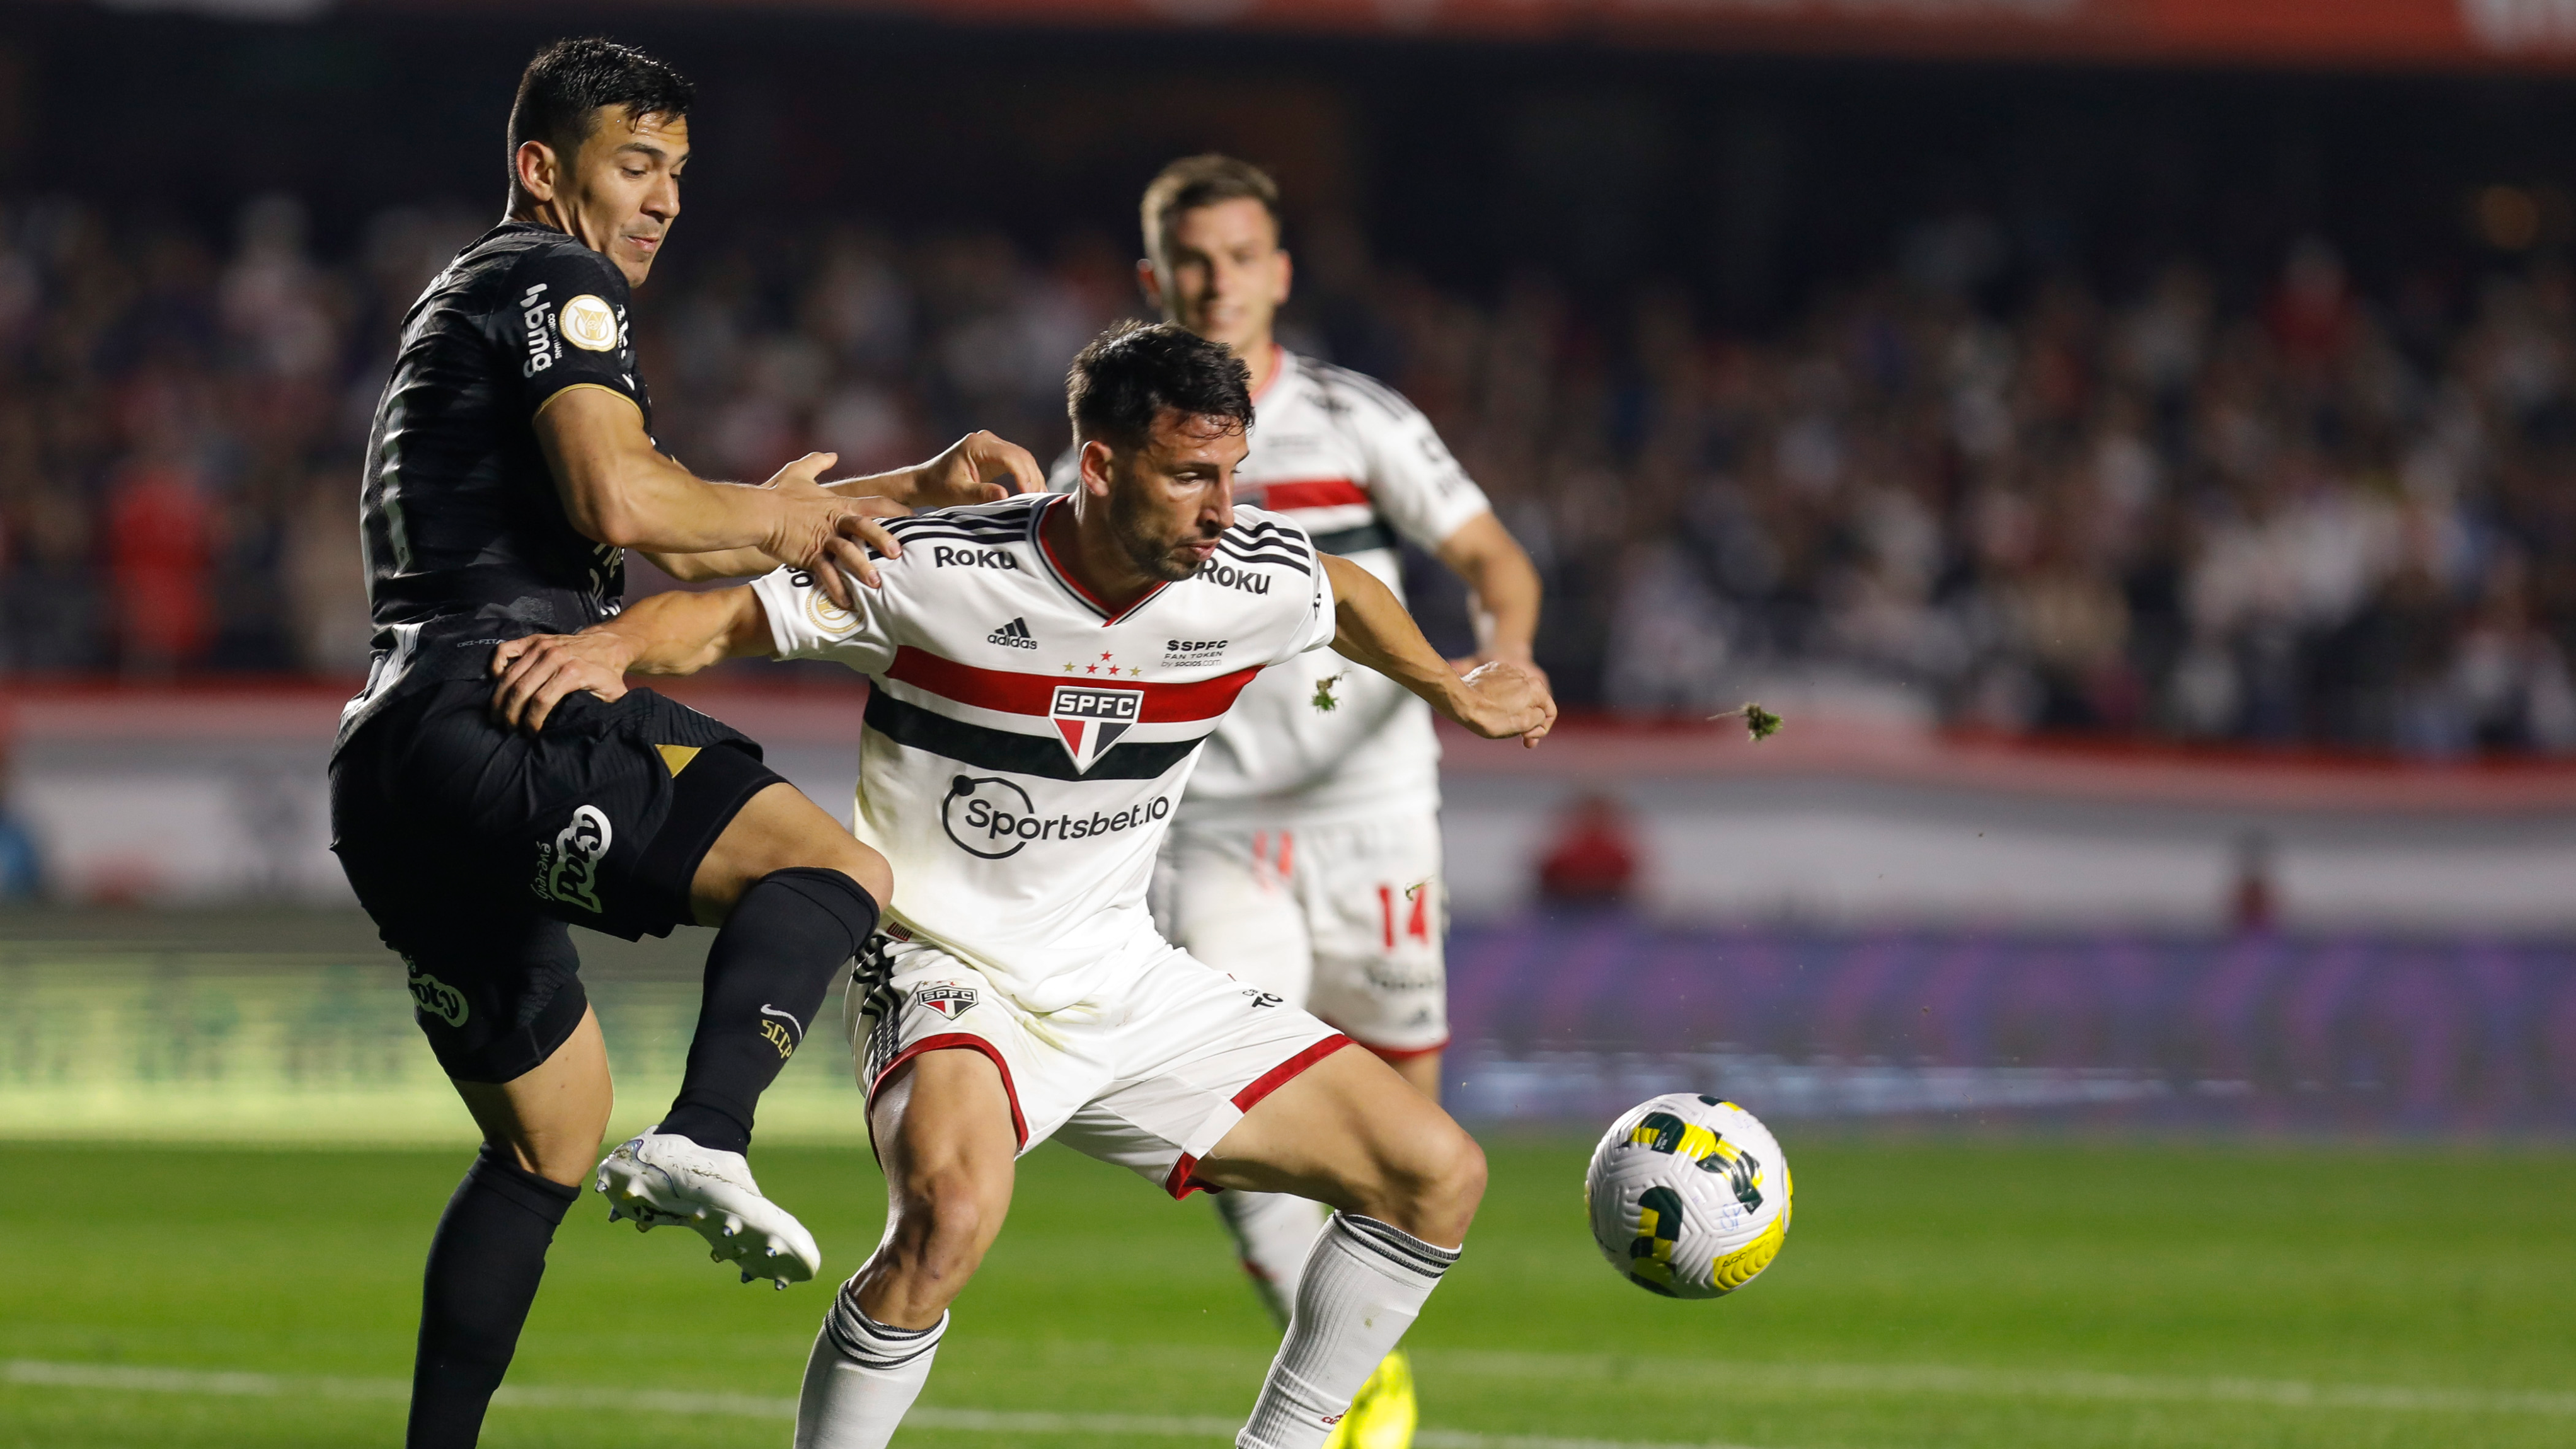 Última Divisão on X: A Segunda Divisão do Campeonato Paulista 2020 começa  neste final de semana - e, como você já deve saber, é a 4ª divisão, apesar  do nome. E para